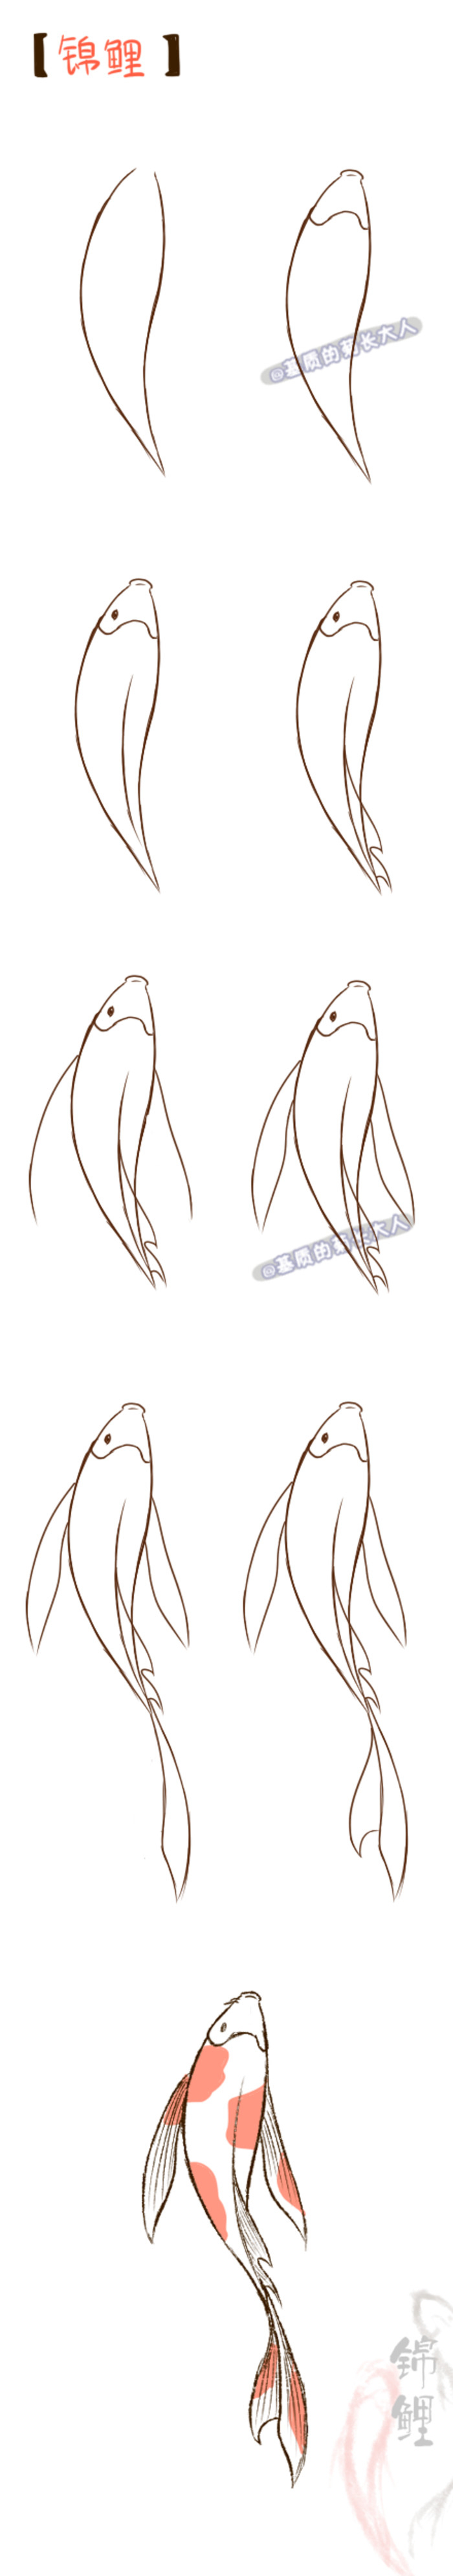 Drawing Easy Koi Fish Drawing - Drawing Image